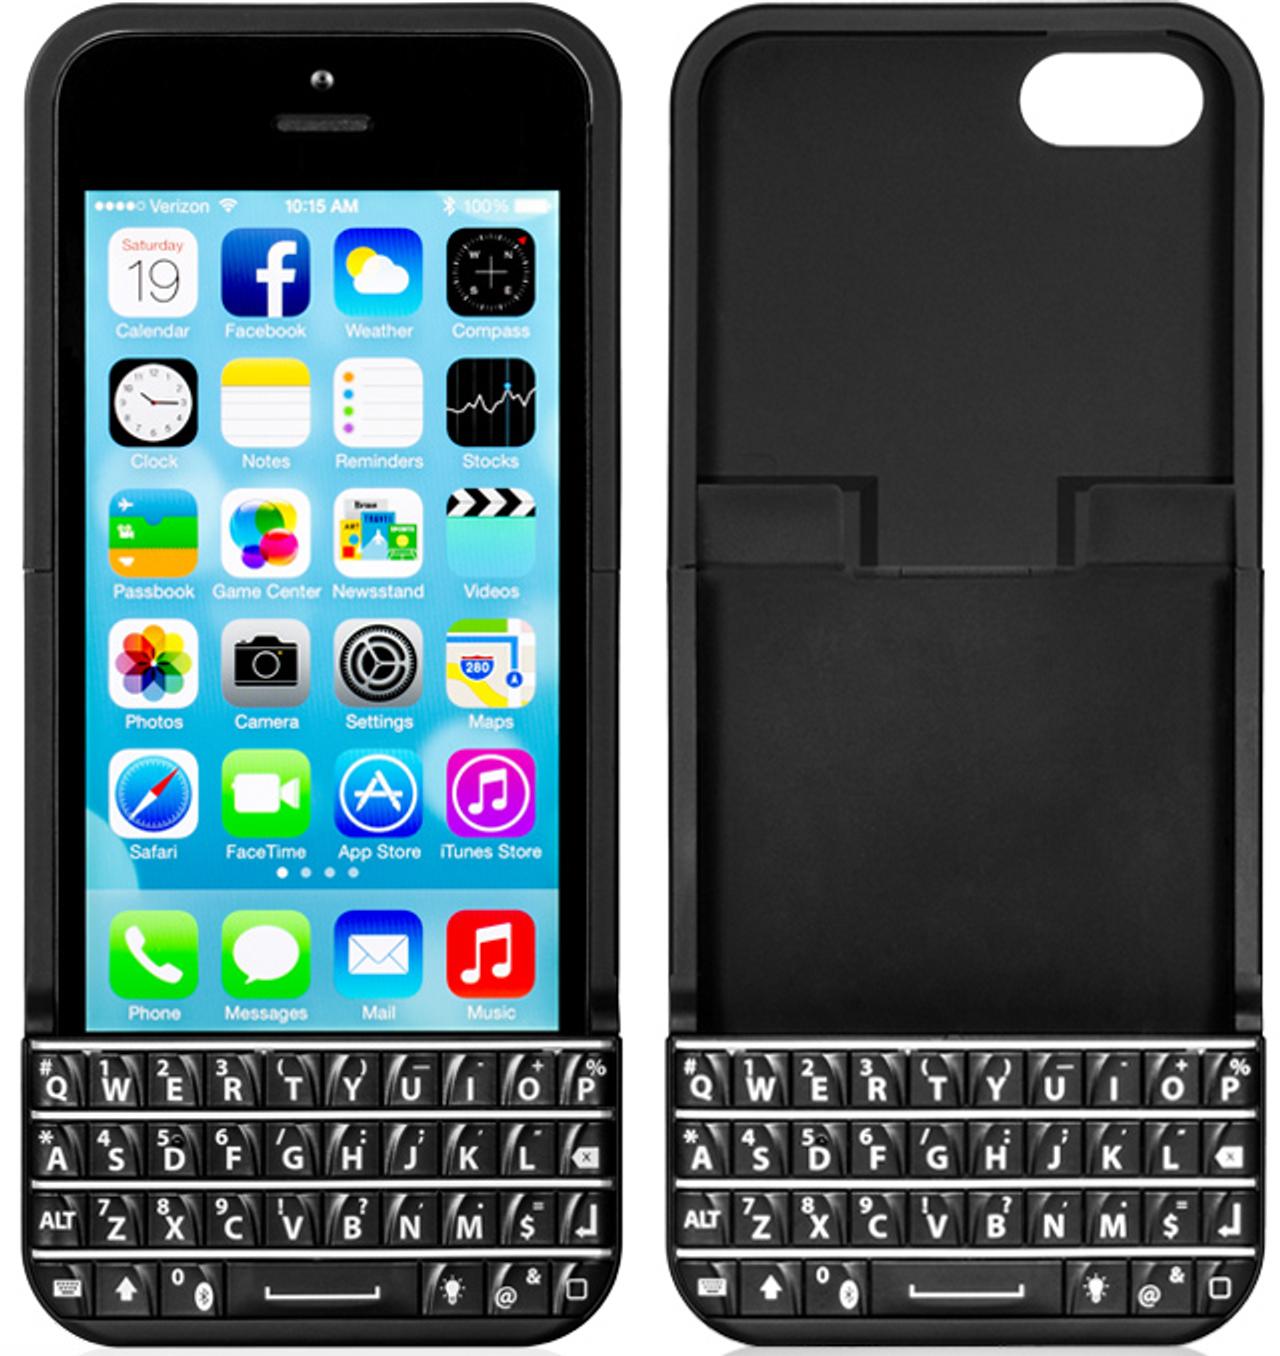 ブラックベリーのポチポチ感をiPhoneにもたらす｢Typo iPhone Keyboard Case｣が本家から提訴される